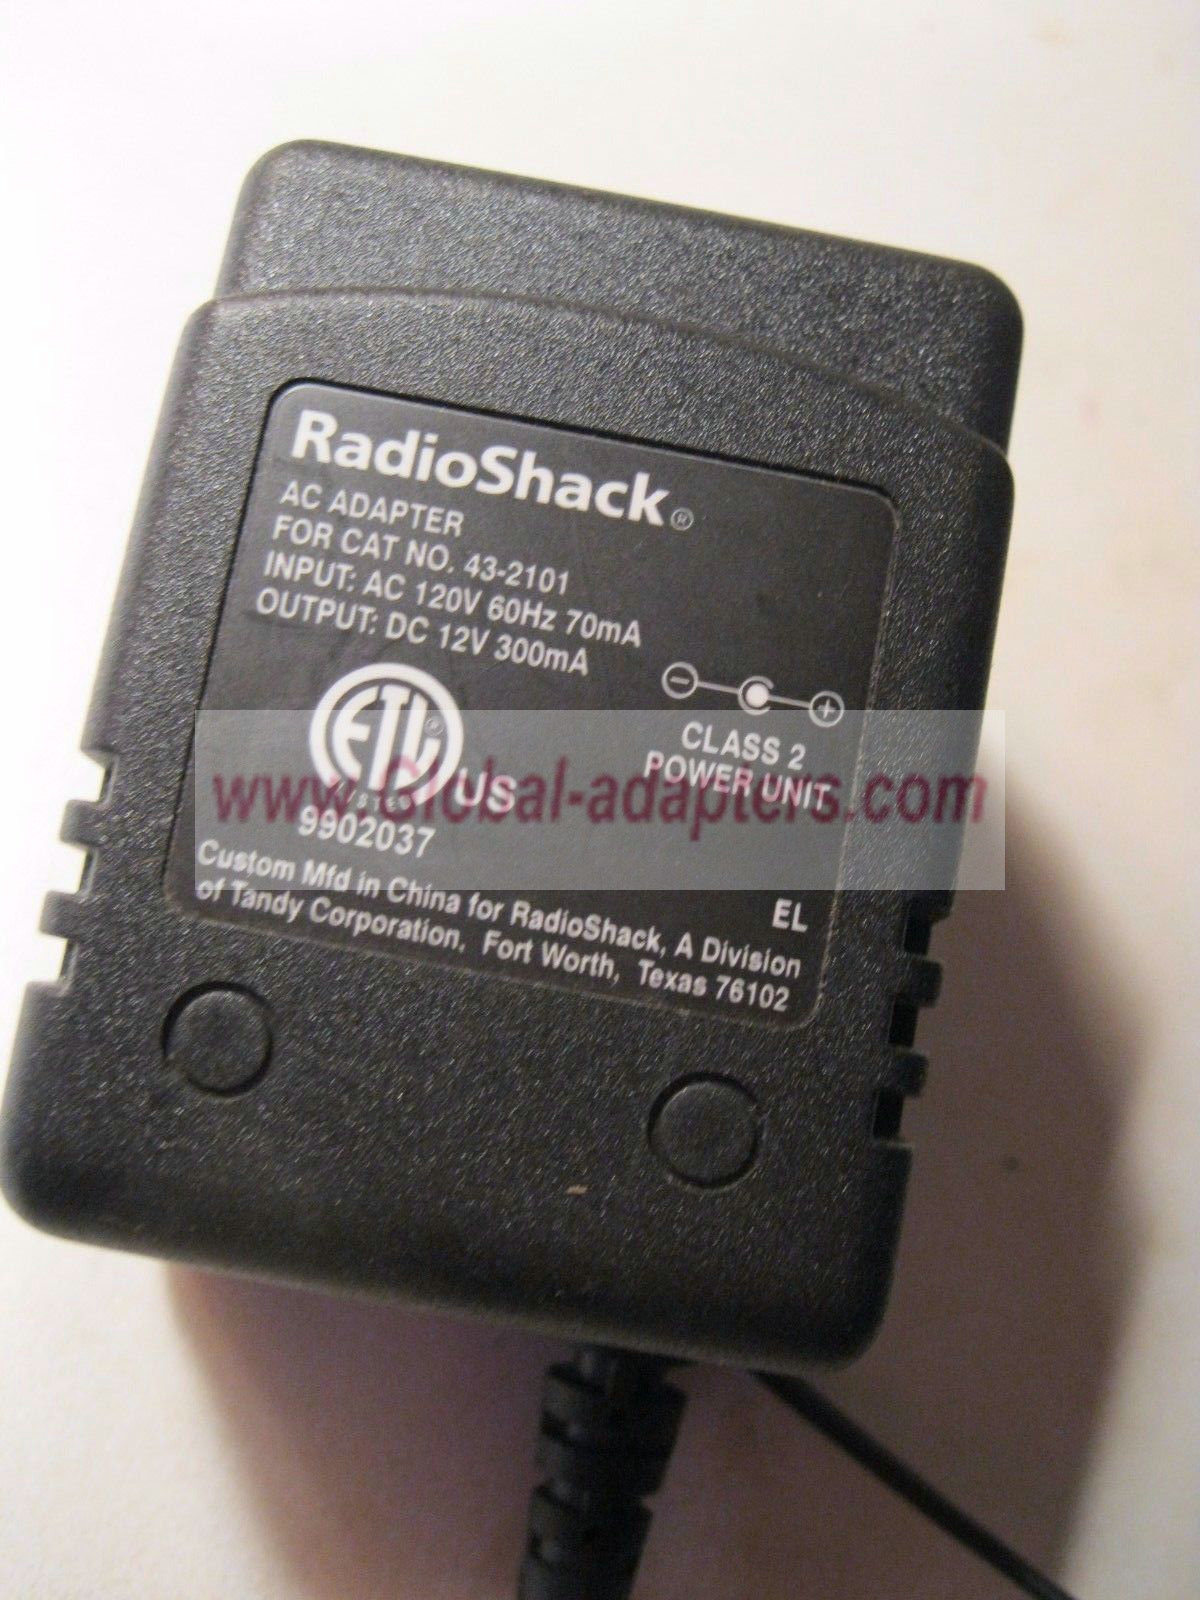 NEW 12V 300mA RadioShack 43-2101 AC Adapter